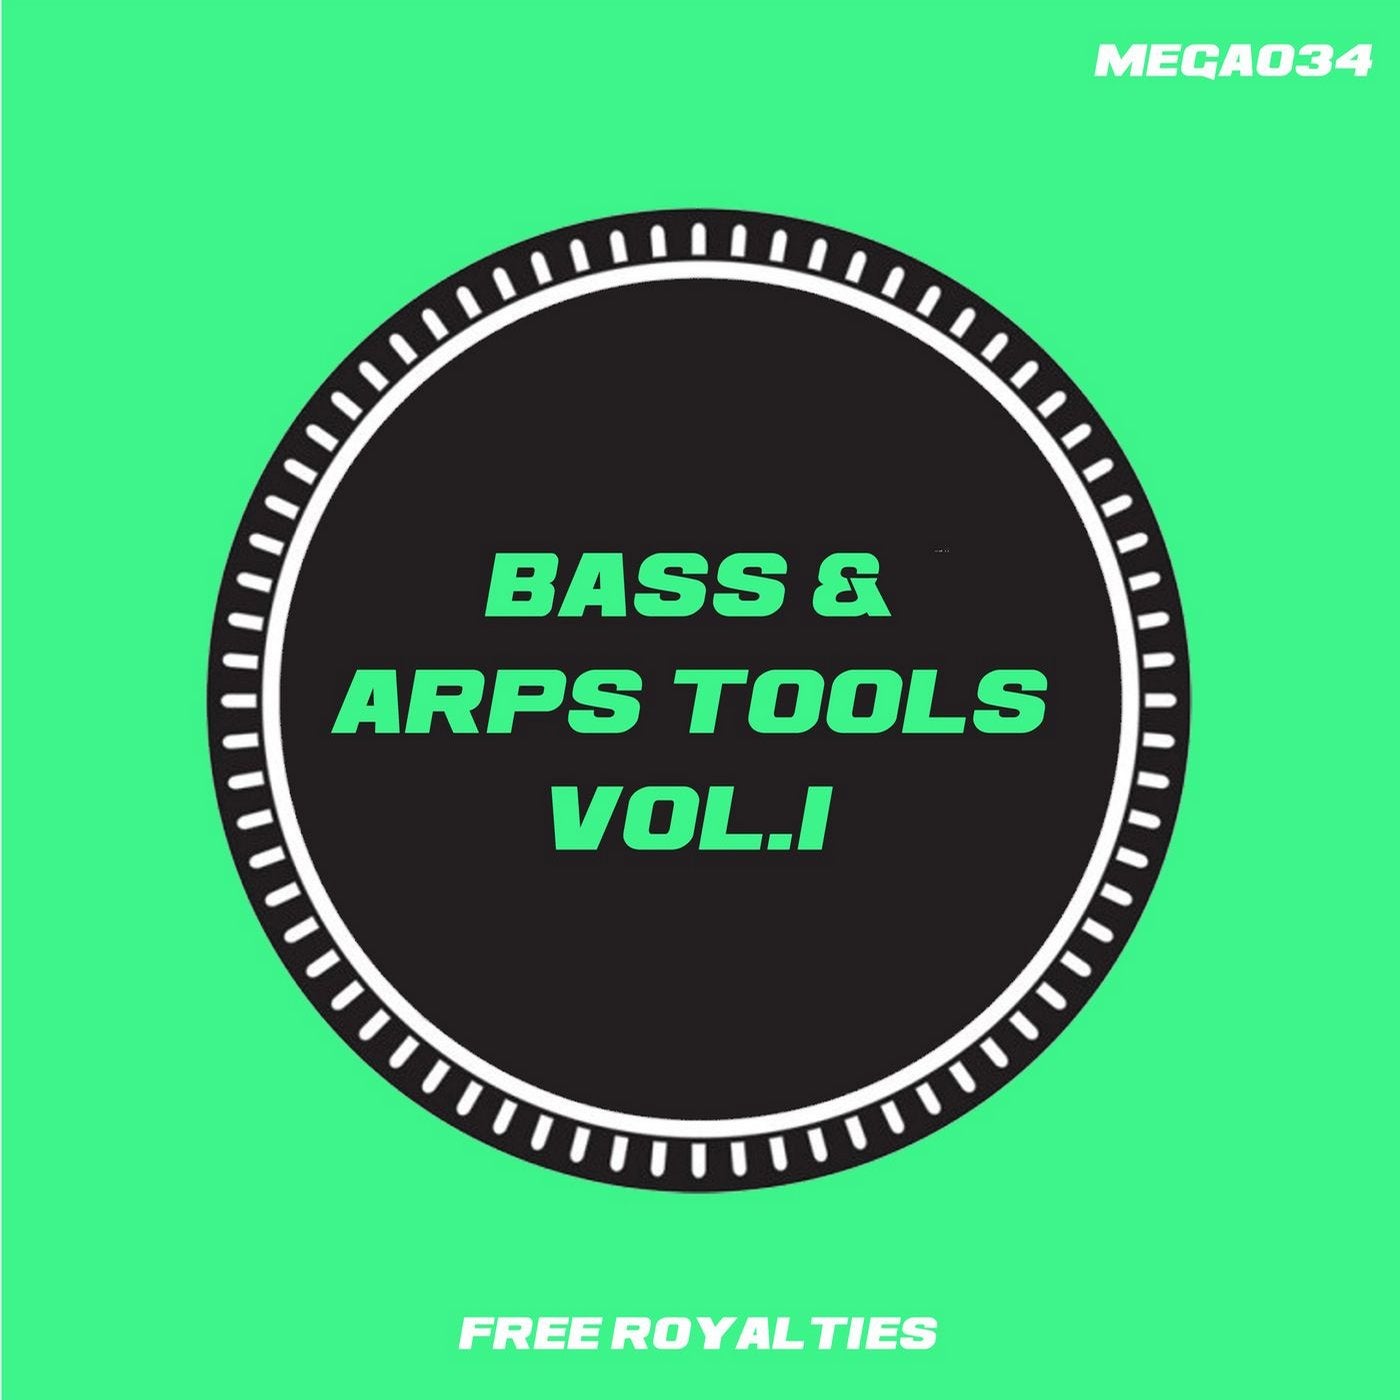 Bass & Arps Tools Vol.1